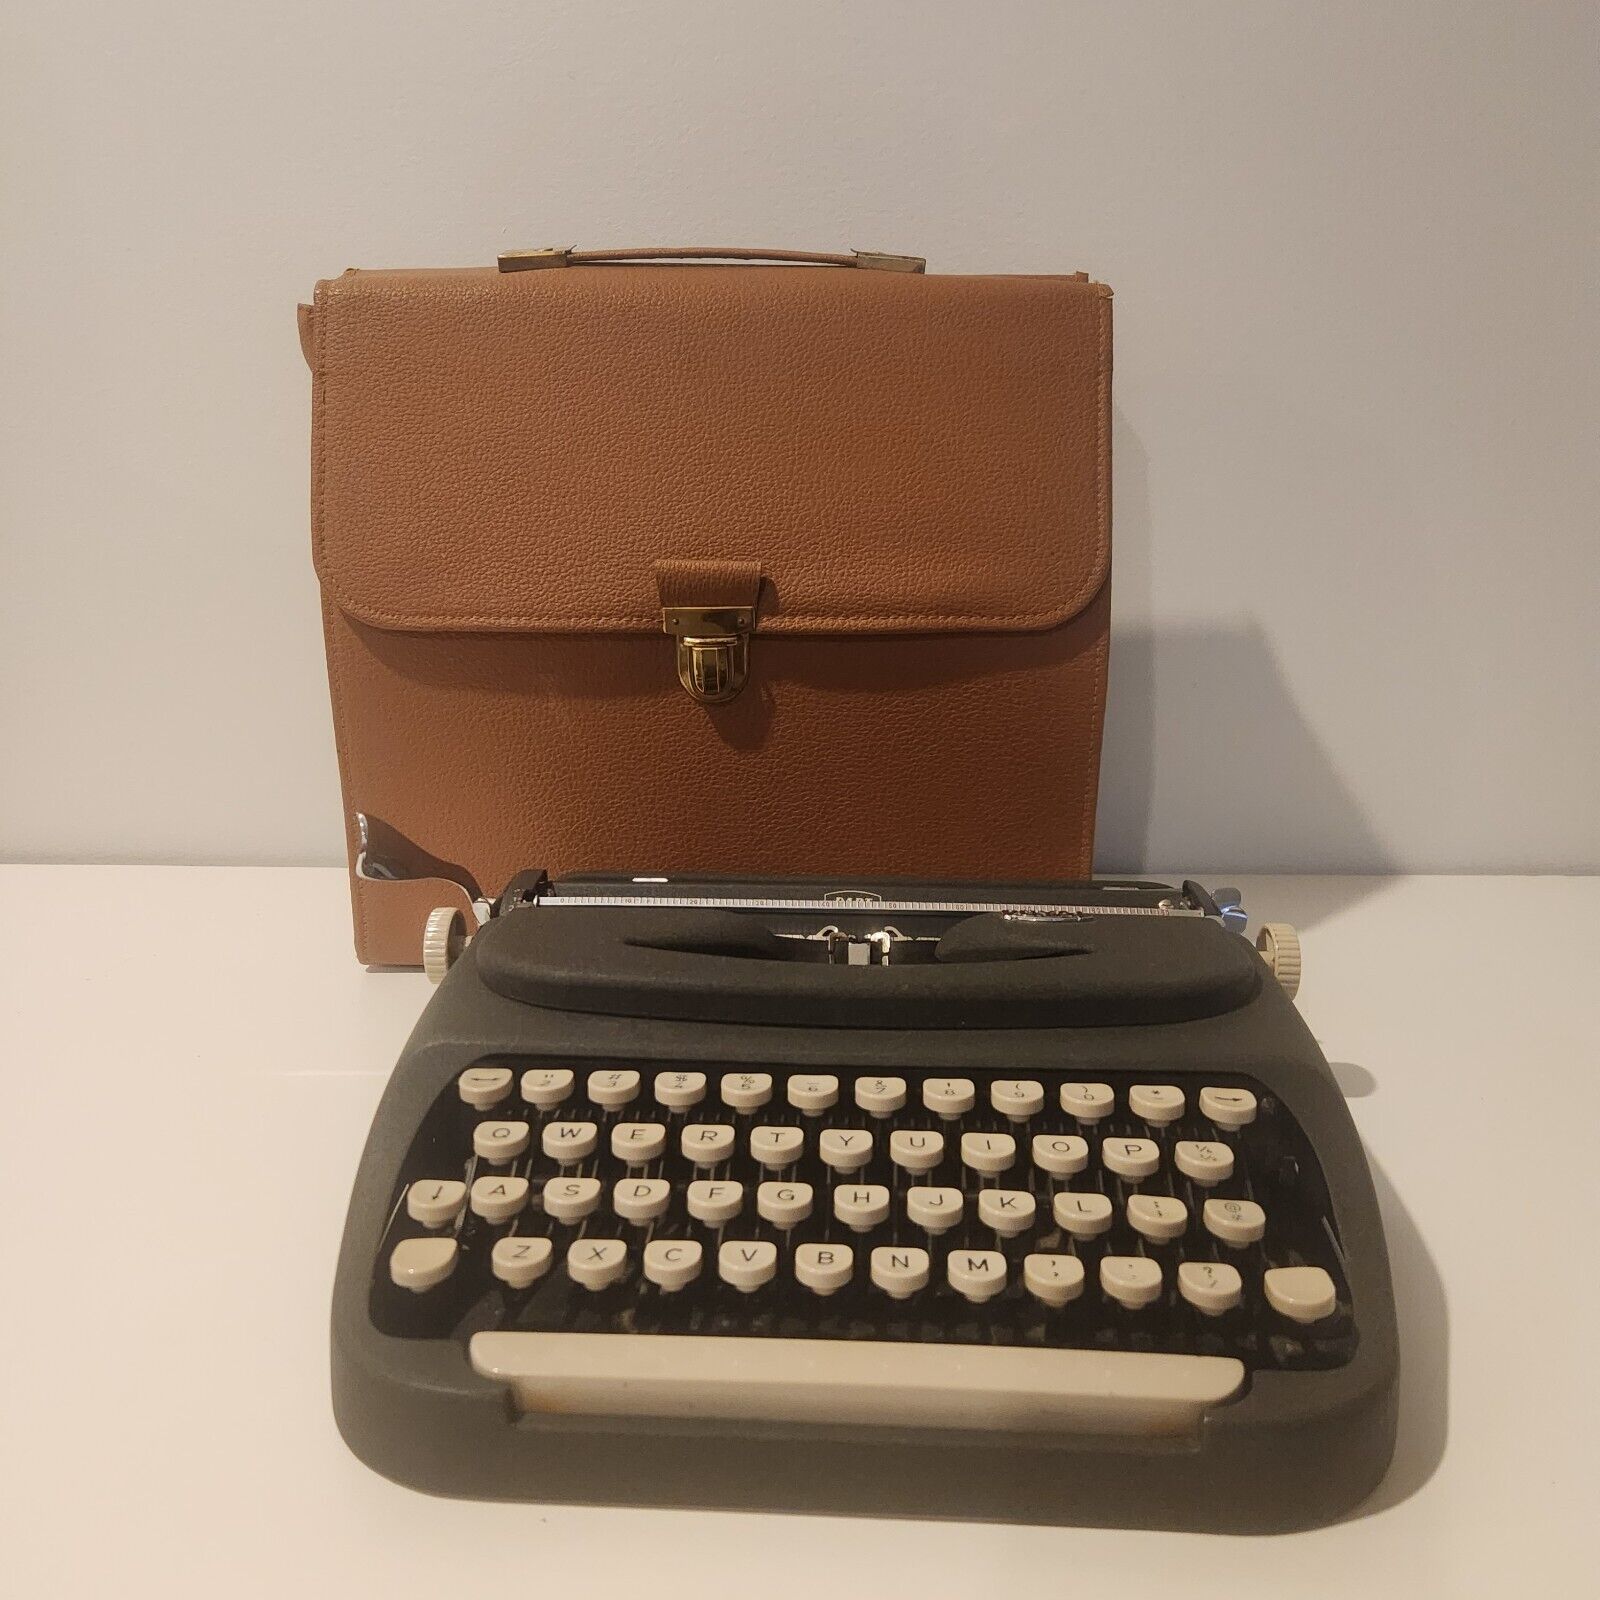 Vintage ROYAL DART Portable Typewriter in Travel Case